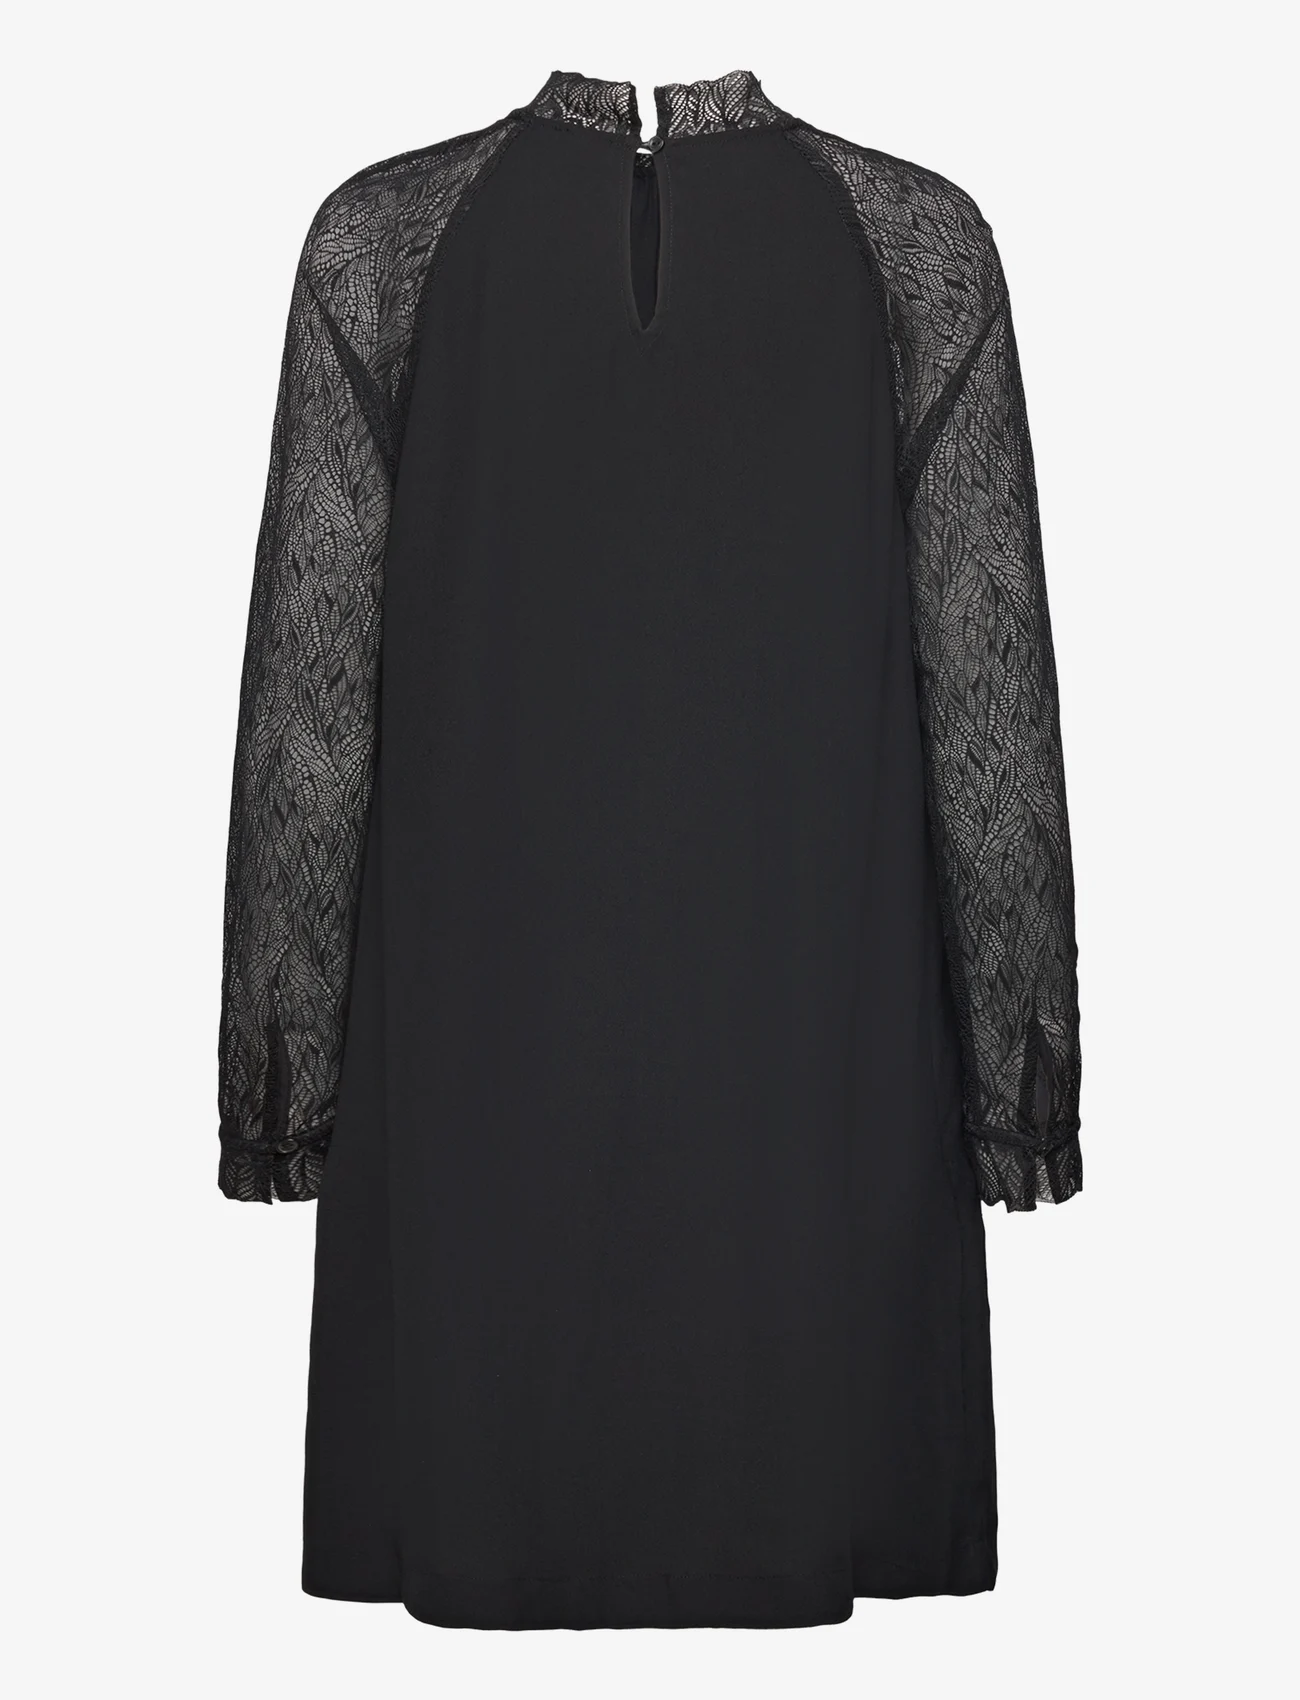 Esprit Casual - Dresses light woven - odzież imprezowa w cenach outletowych - black - 1